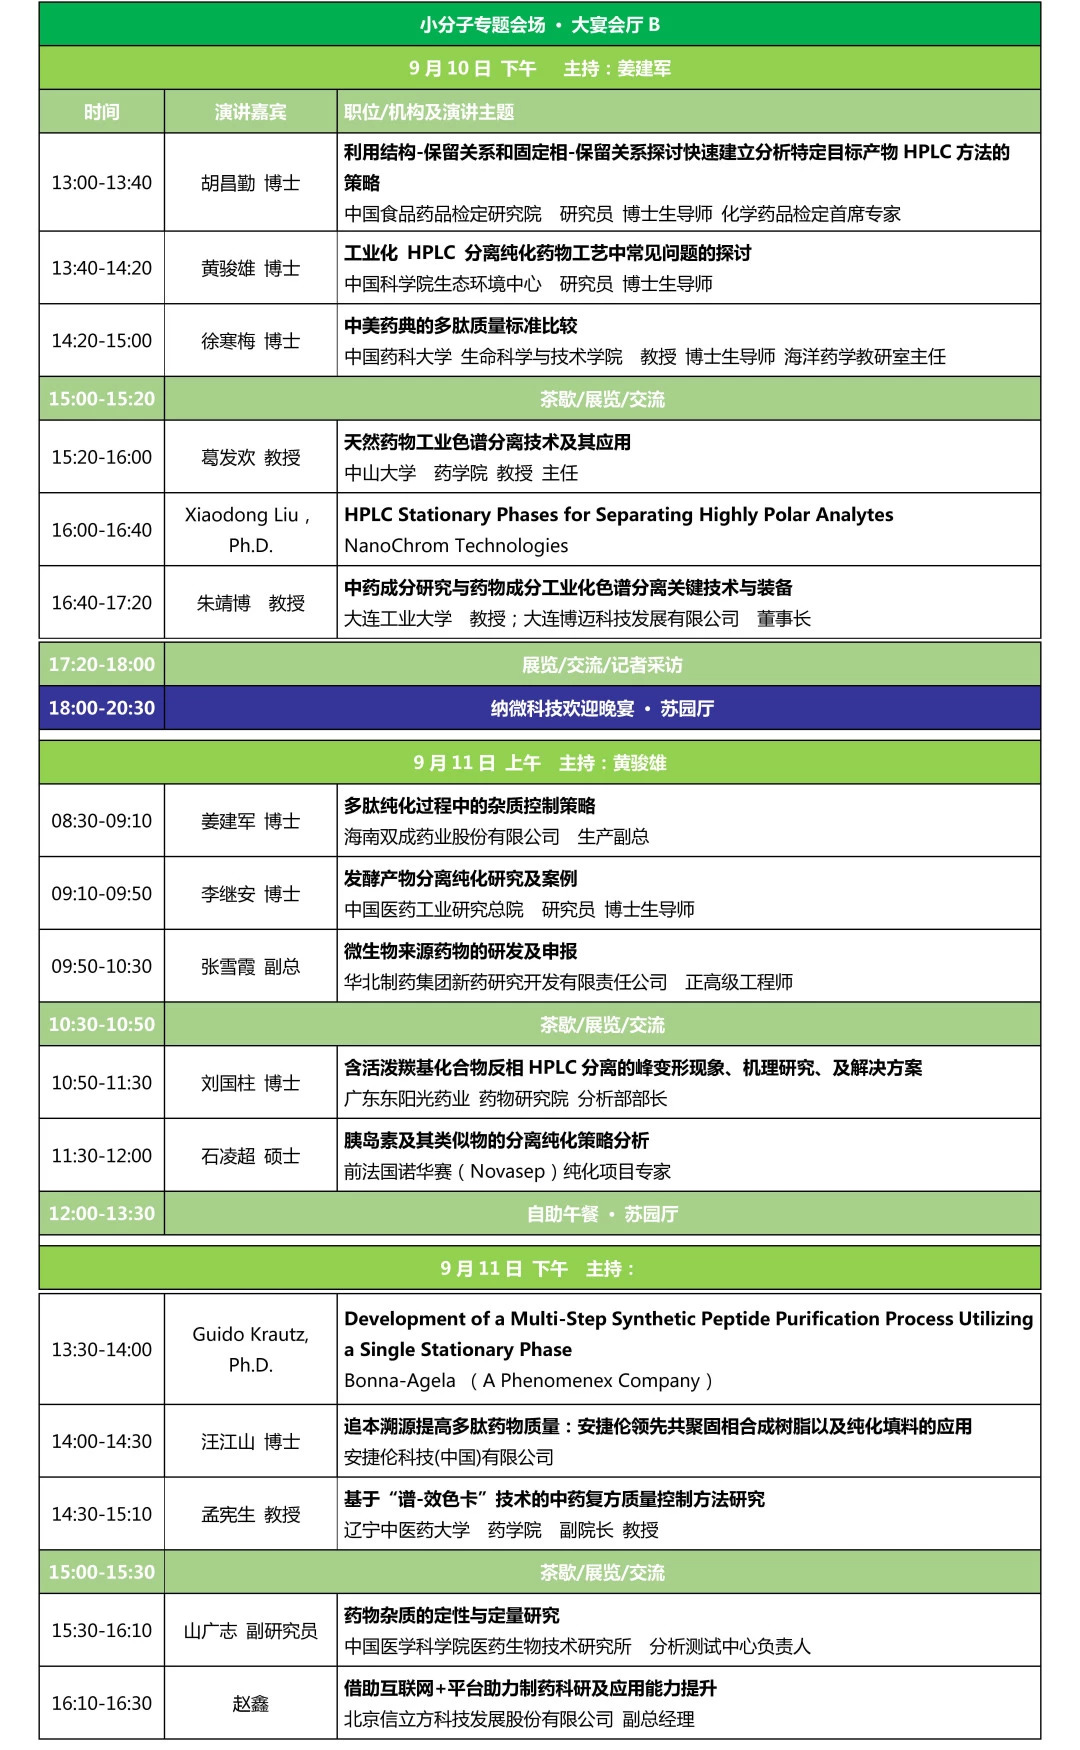 第五届制药分离纯化技术学术论坛暨BIOSEP International Conference2018